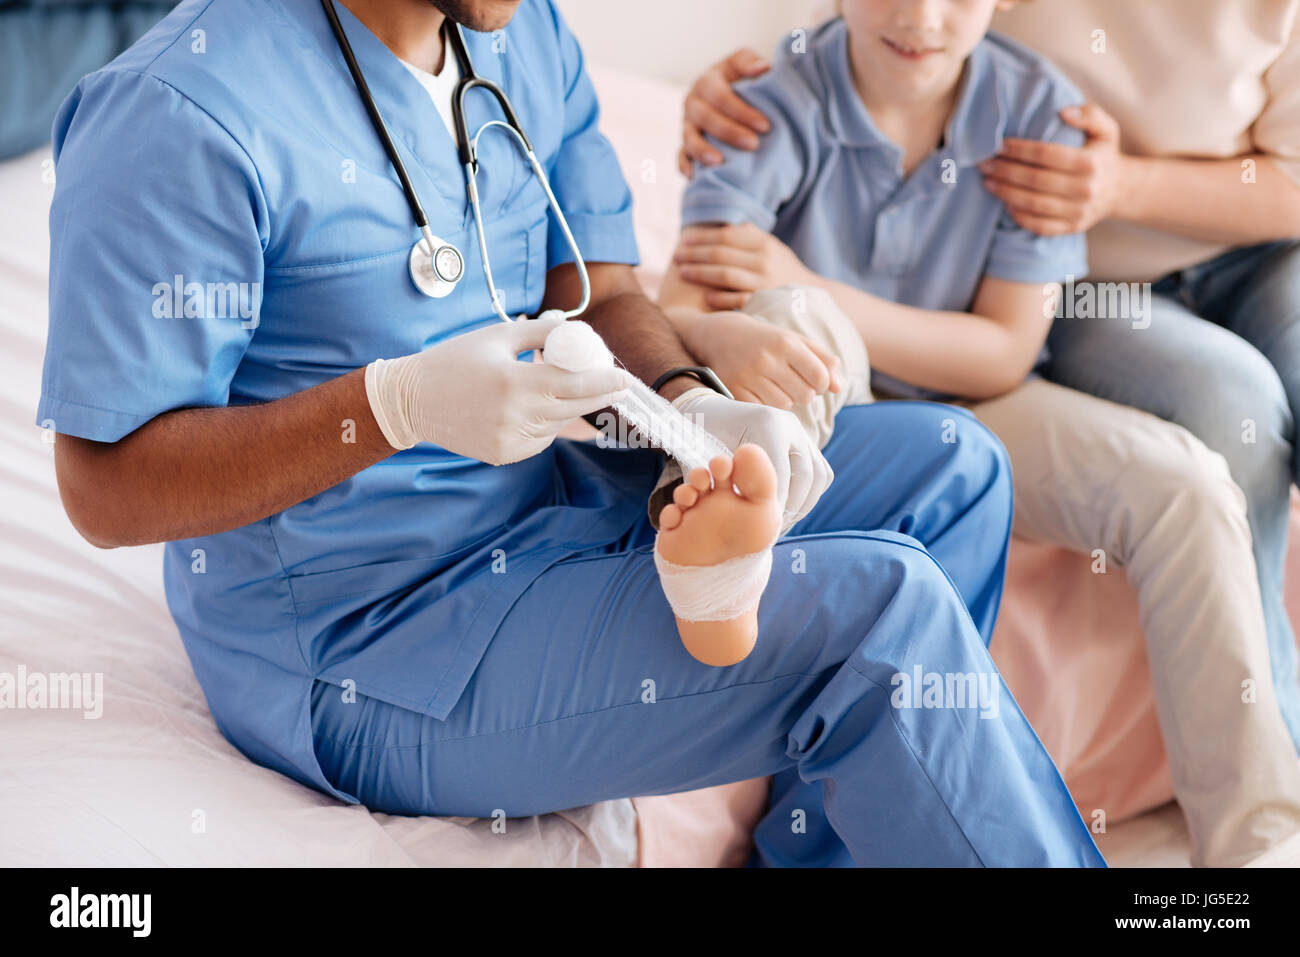 Garçon joyeux donnant son pied pour bandage pansement Banque D'Images